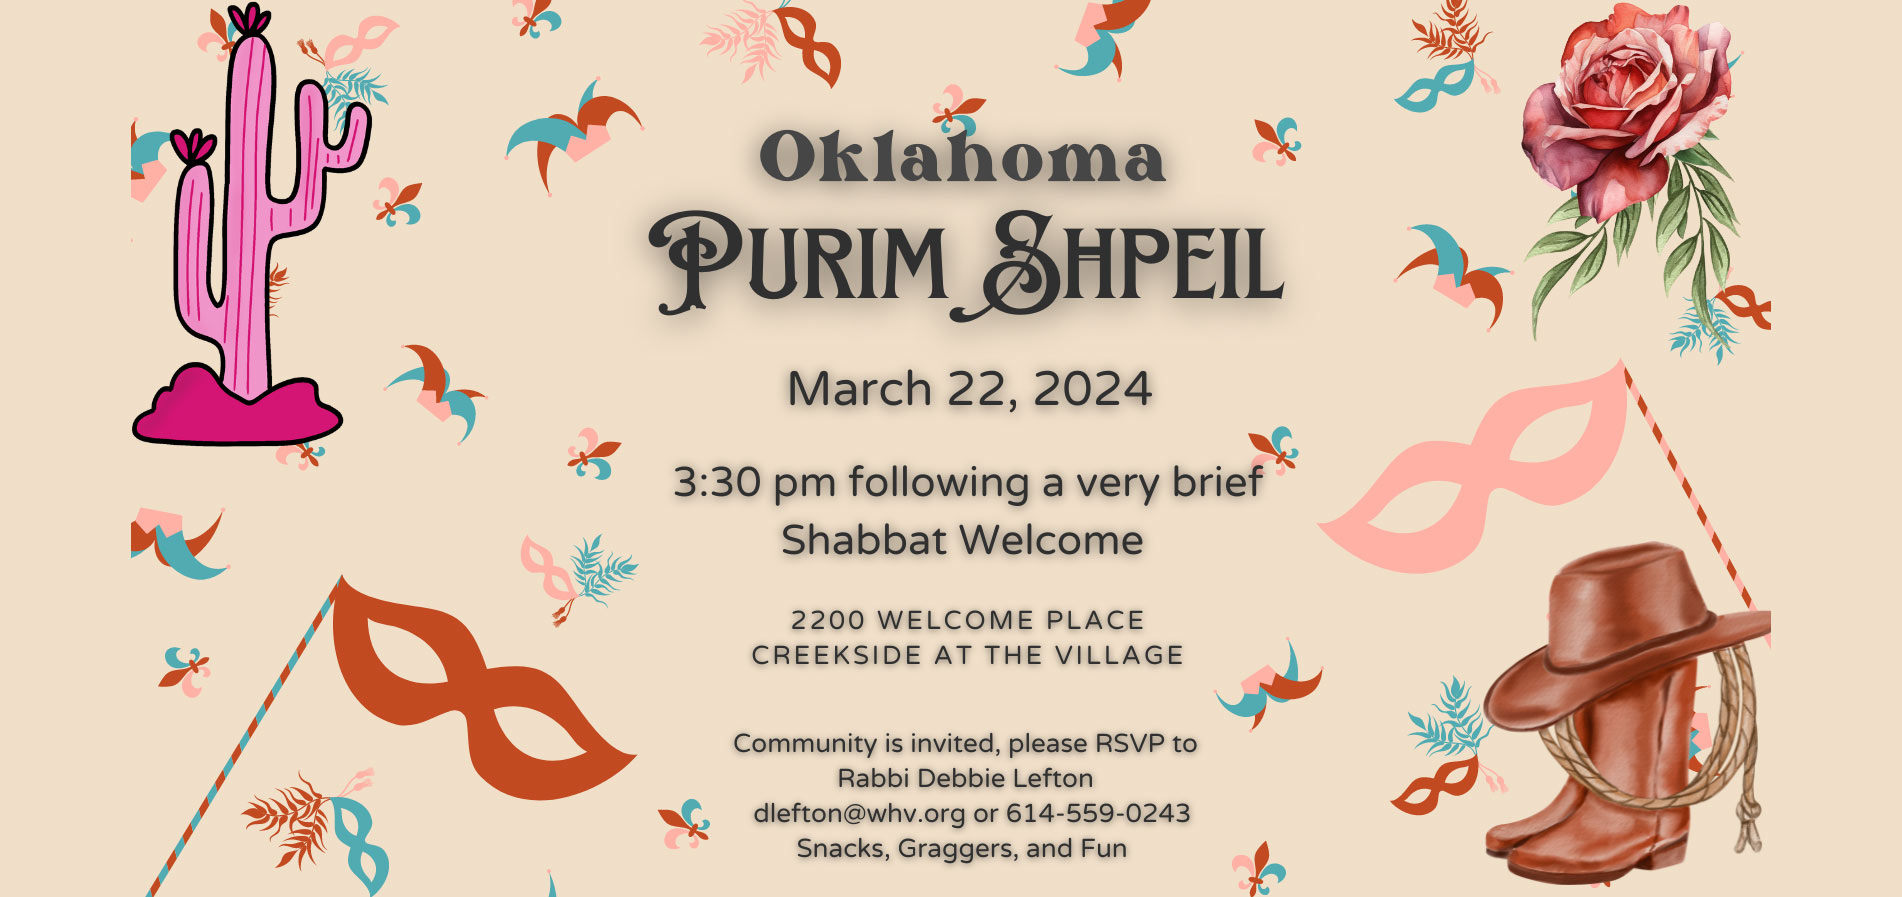 Oklahoma Purim Shpeil